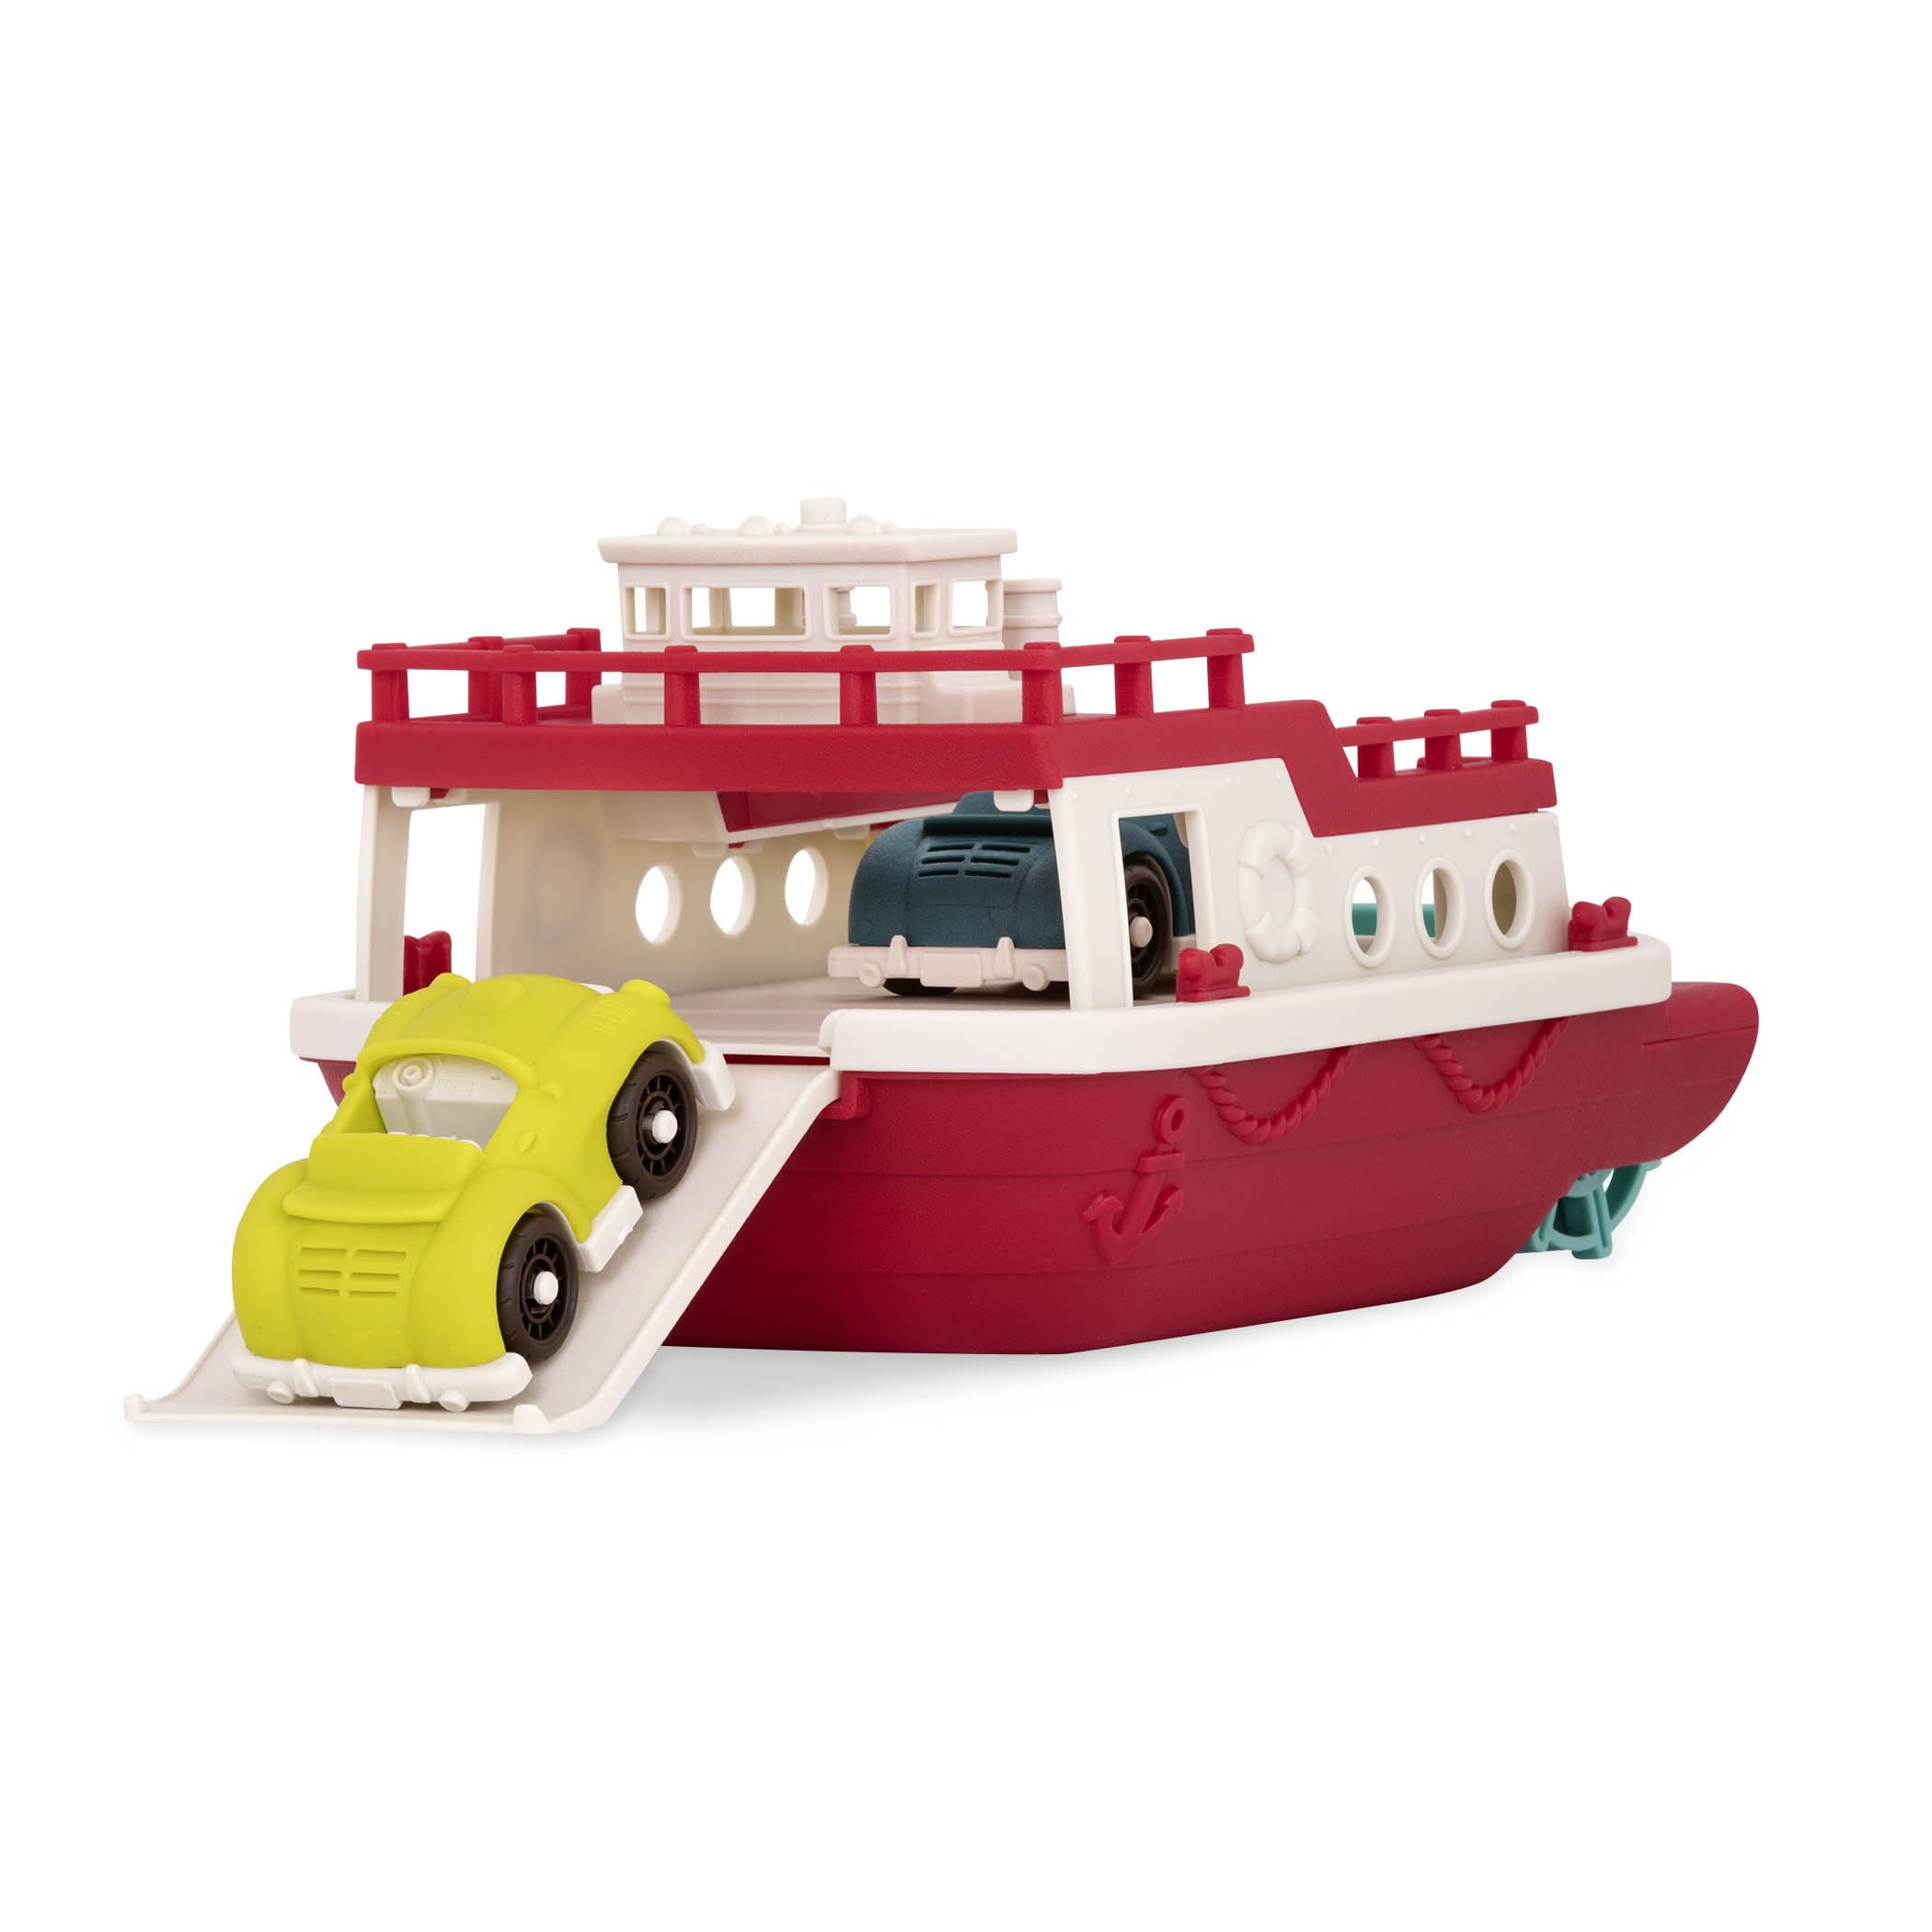 Wonder Wheels by Battat Ferry Boat Bath Toy, Large Boat Toy, 1 Year Plus